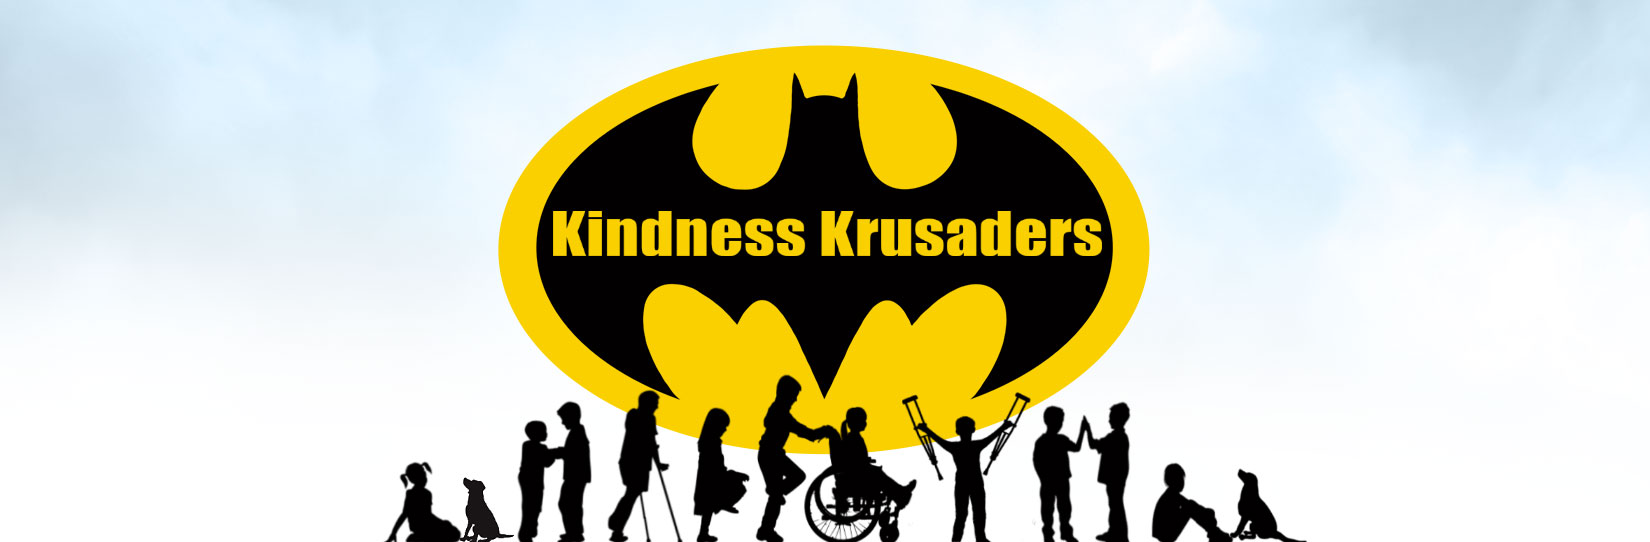 Batmo Kindness Krusaders